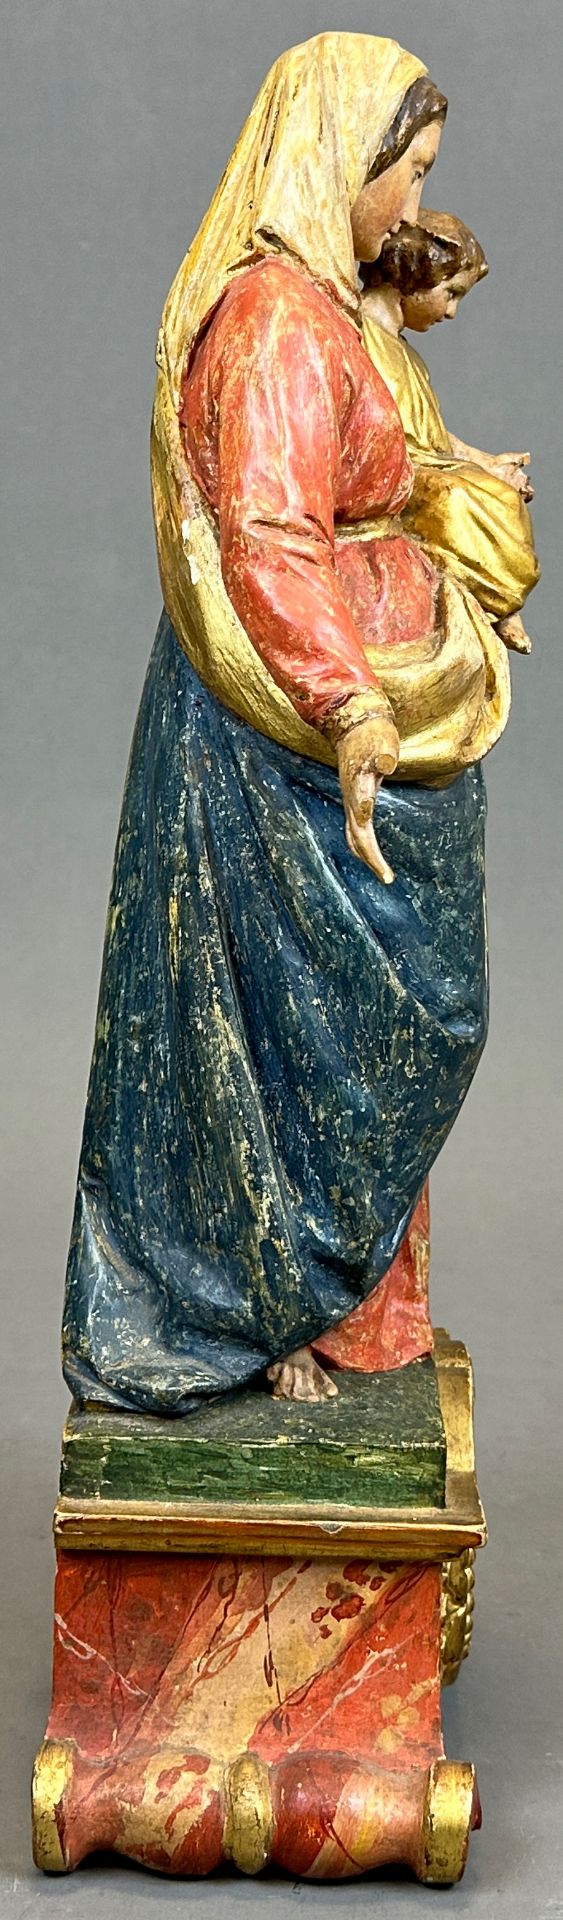 Holzfigur. Jungfrau Maria mit Christuskind. Mitte 18. Jahrhundert. Bayern. - Bild 4 aus 10